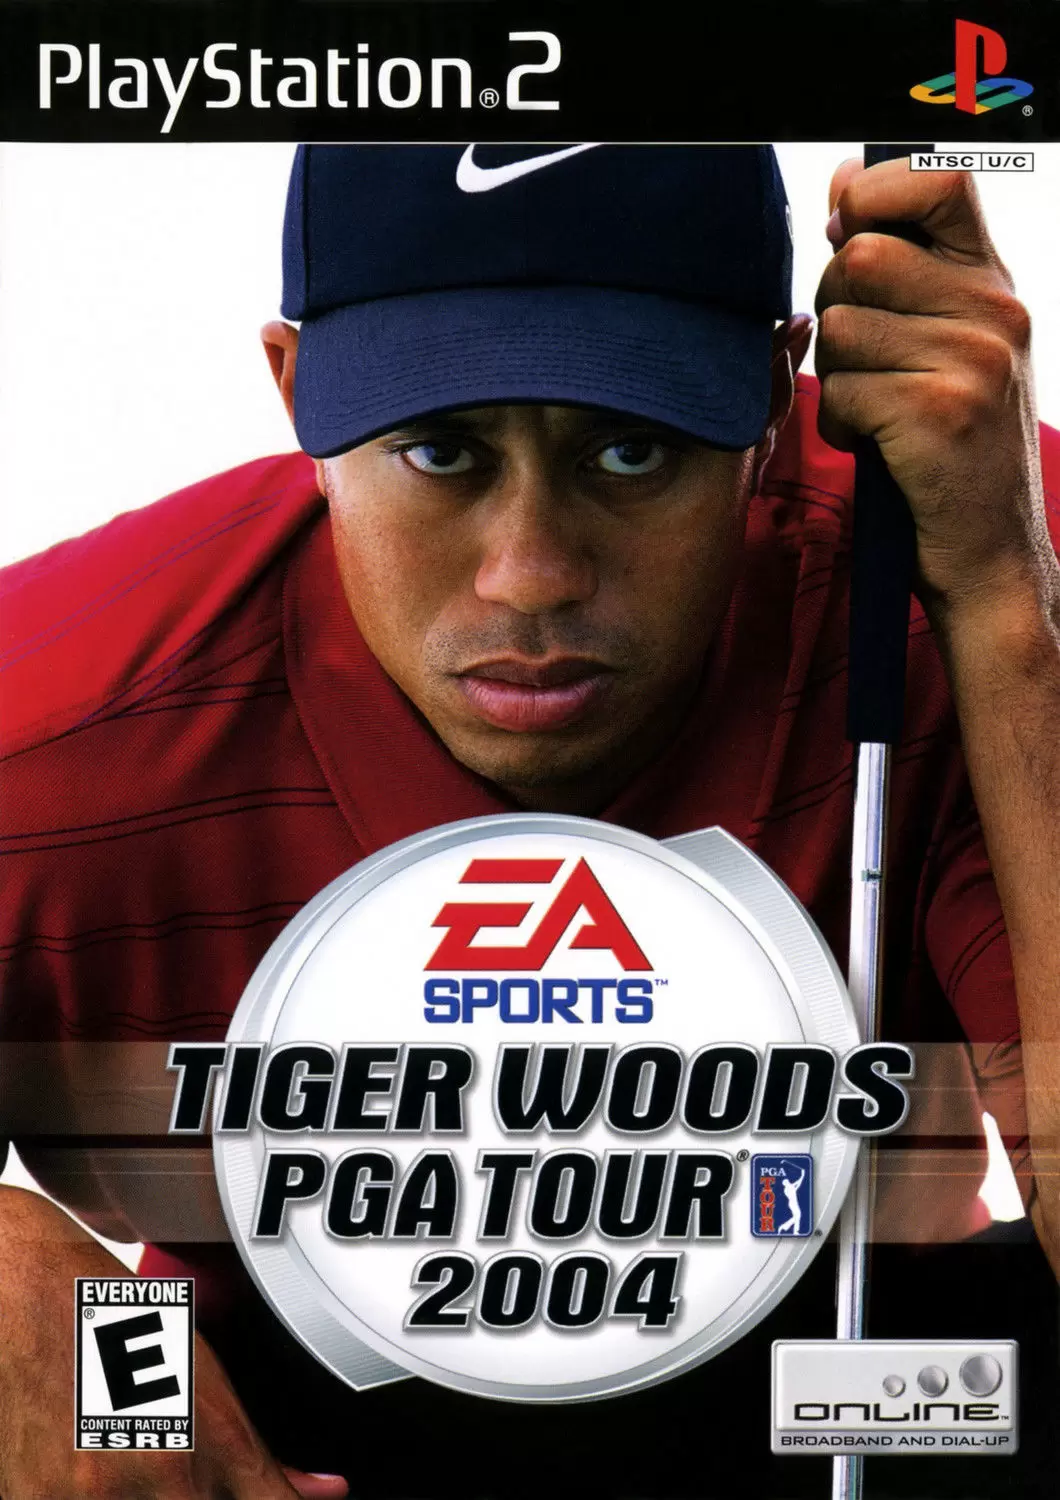 PS2 Games - Tiger Woods PGA Tour 2004